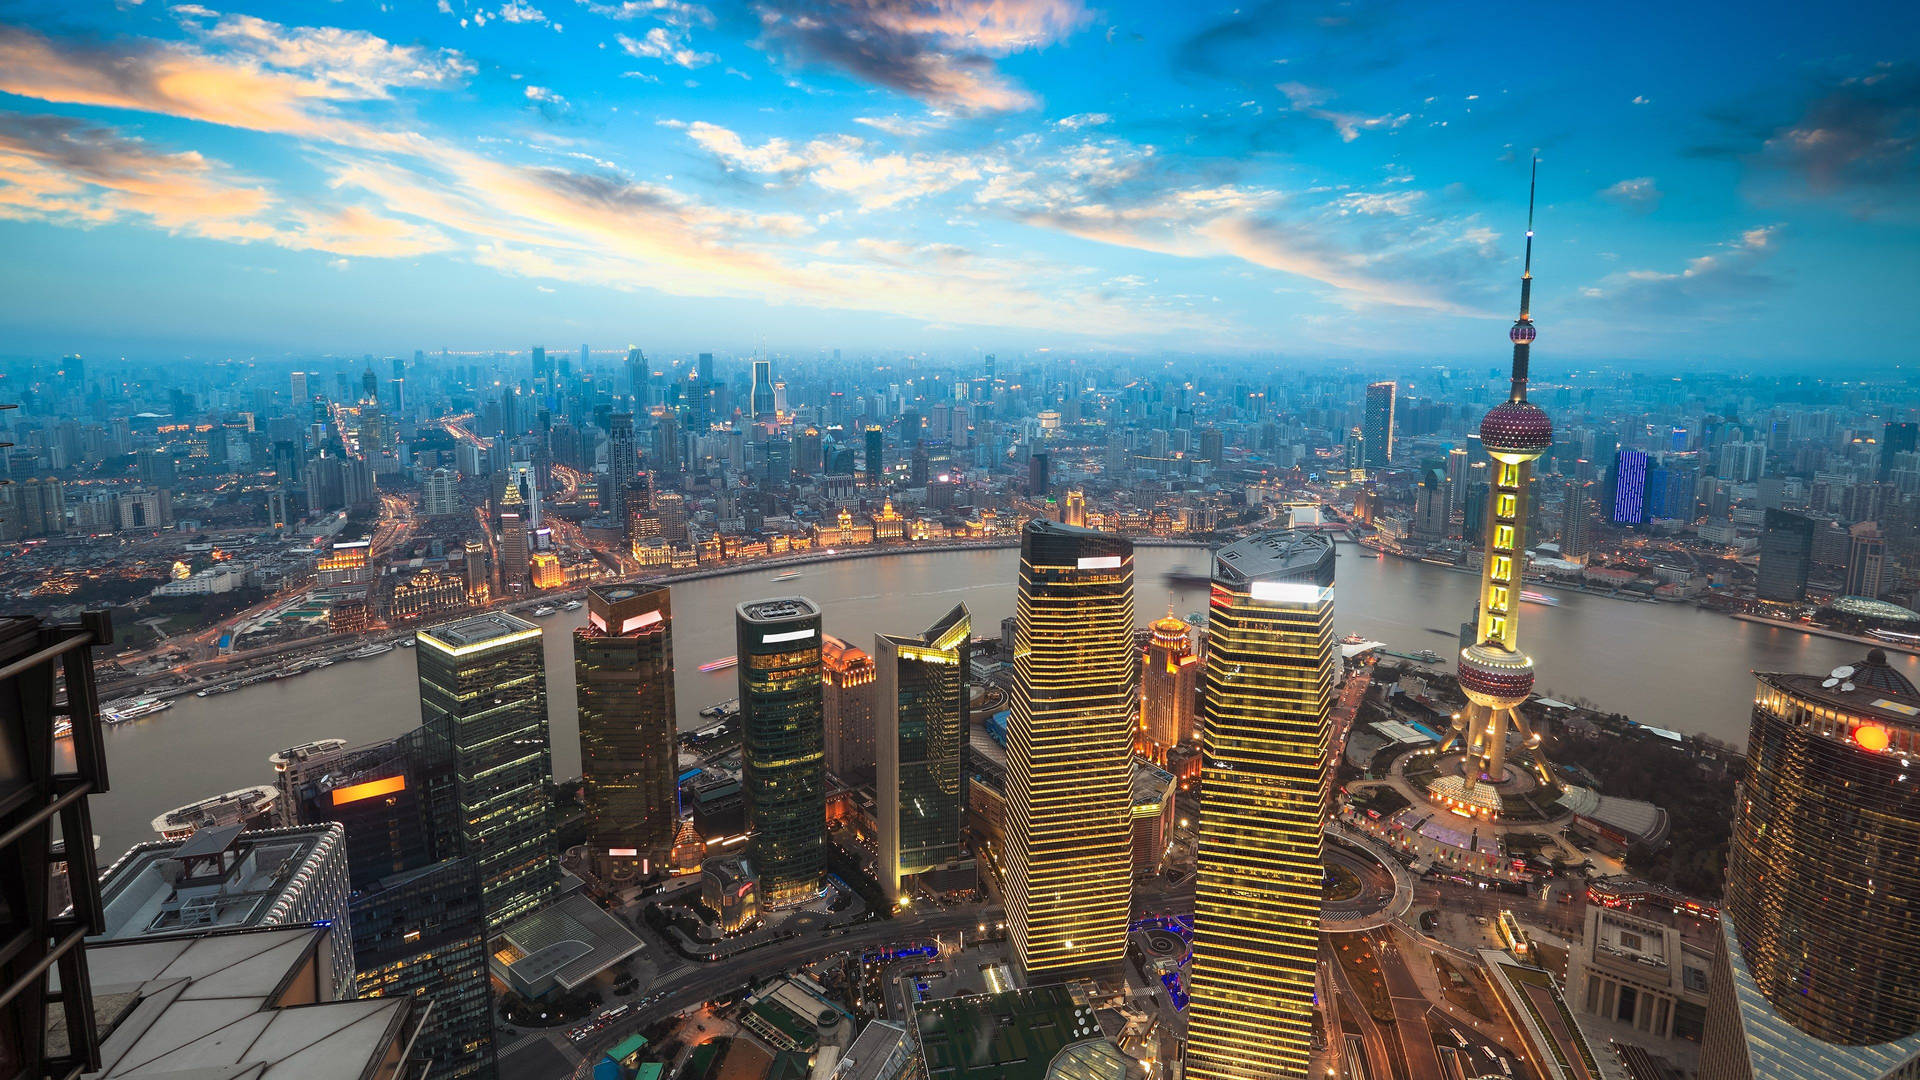 4K Ultra HD City Of Shanghai Wallpapers - Jorden set fra luften: Wallpaper